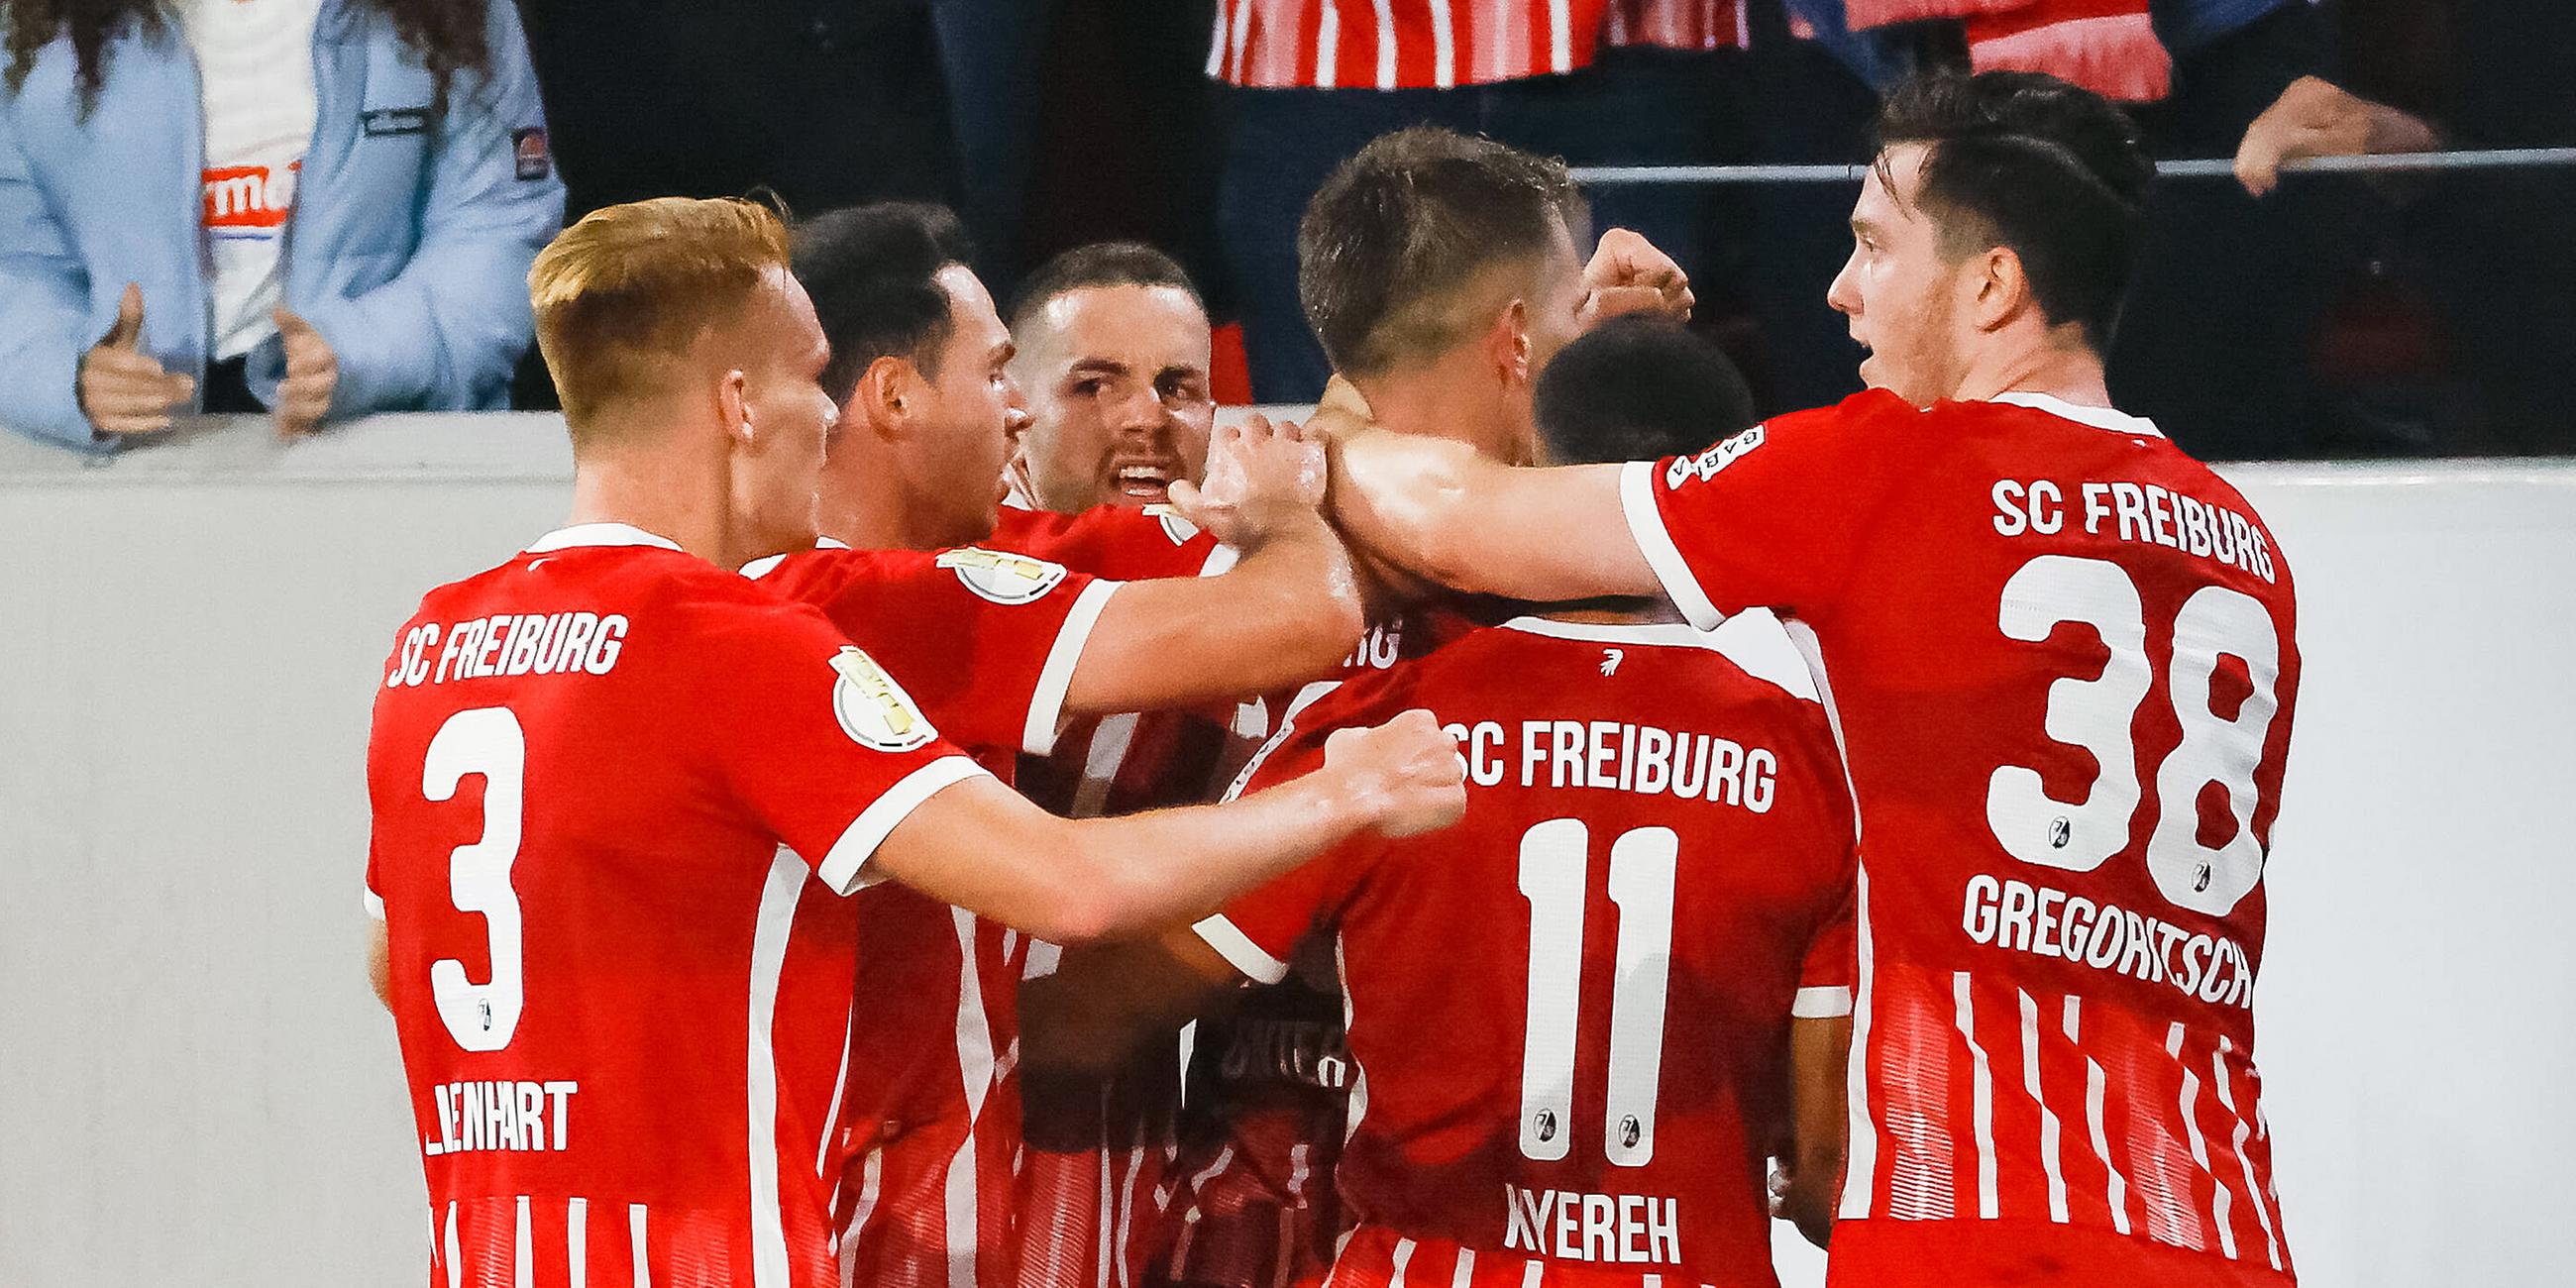 19.10.2022, Freiburg: Torjubel beim SC Freiburg beim Spiel gegen den FC St. Pauli